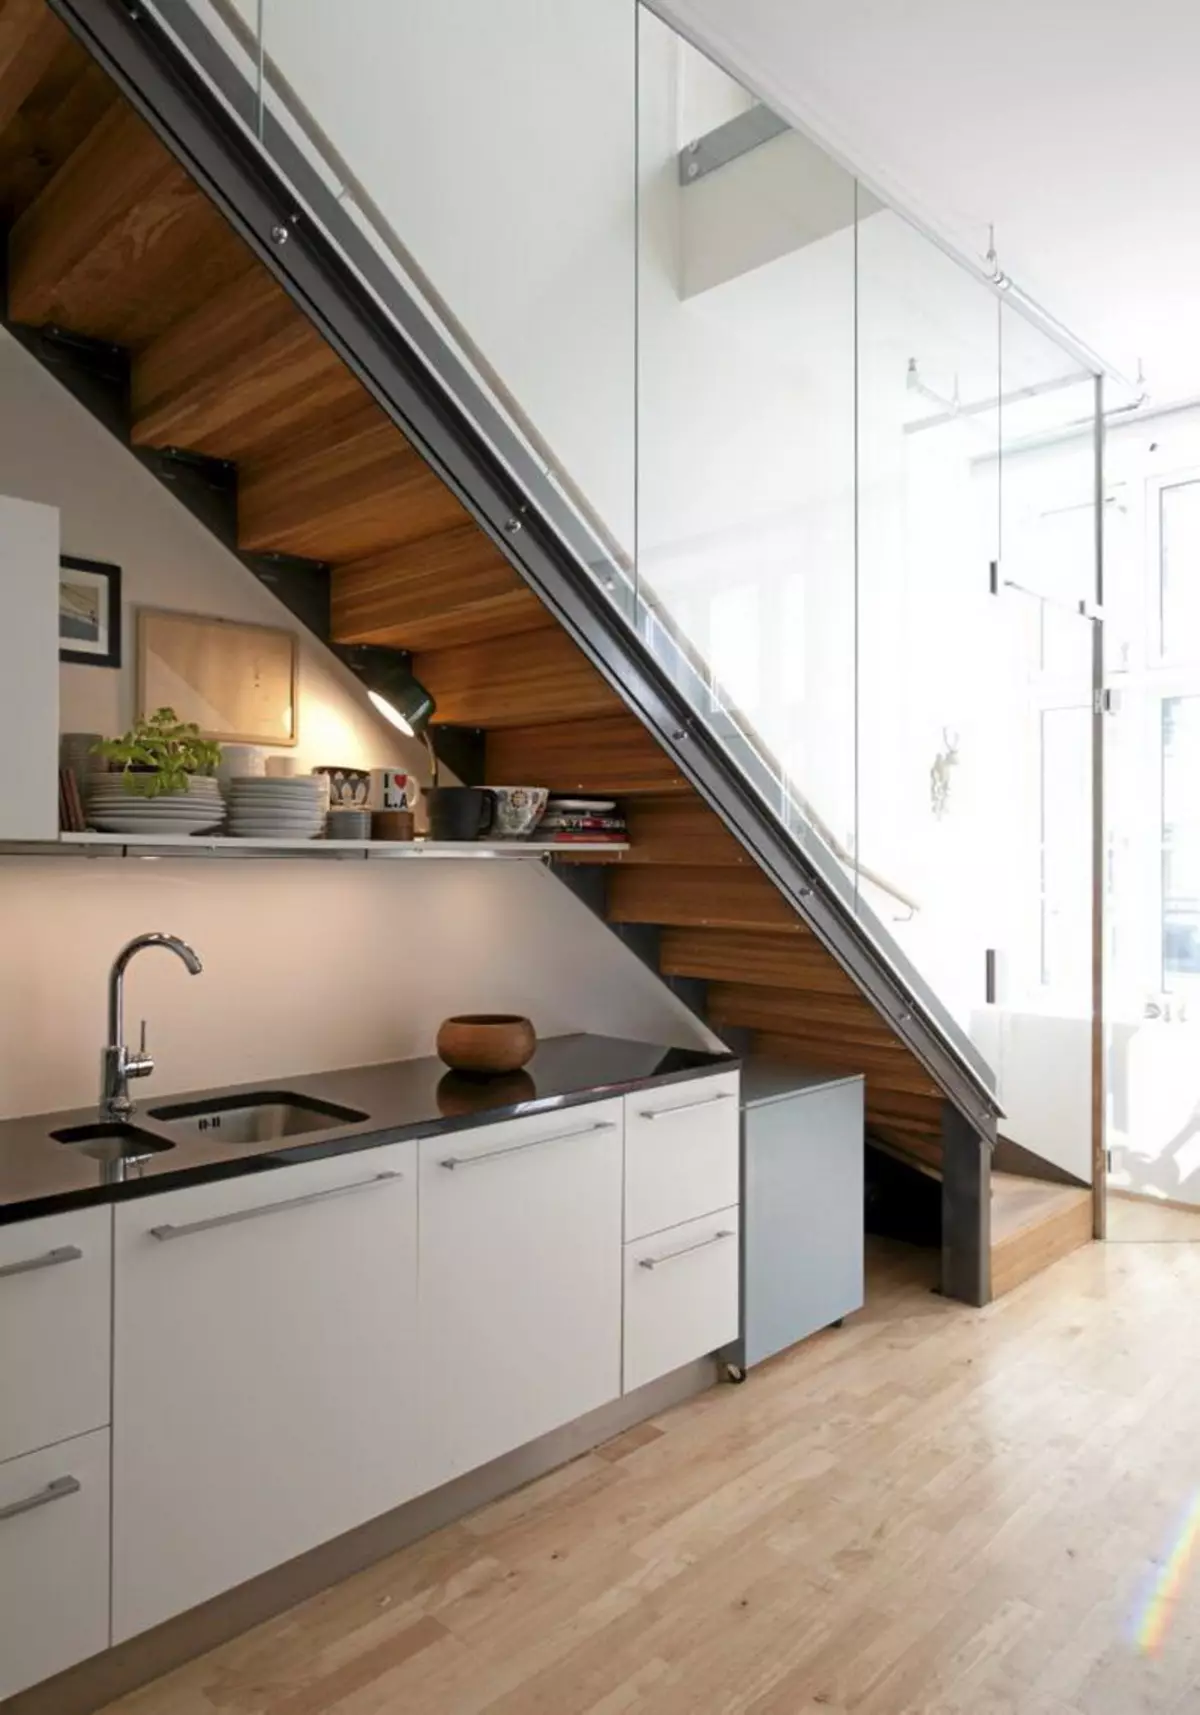 Второй этаж на кухне. Кухня под лестницей. Кухонный гарнитур под лестницей. Угловая кухня под лестницей. Кухня под лестницей на второй этаж.